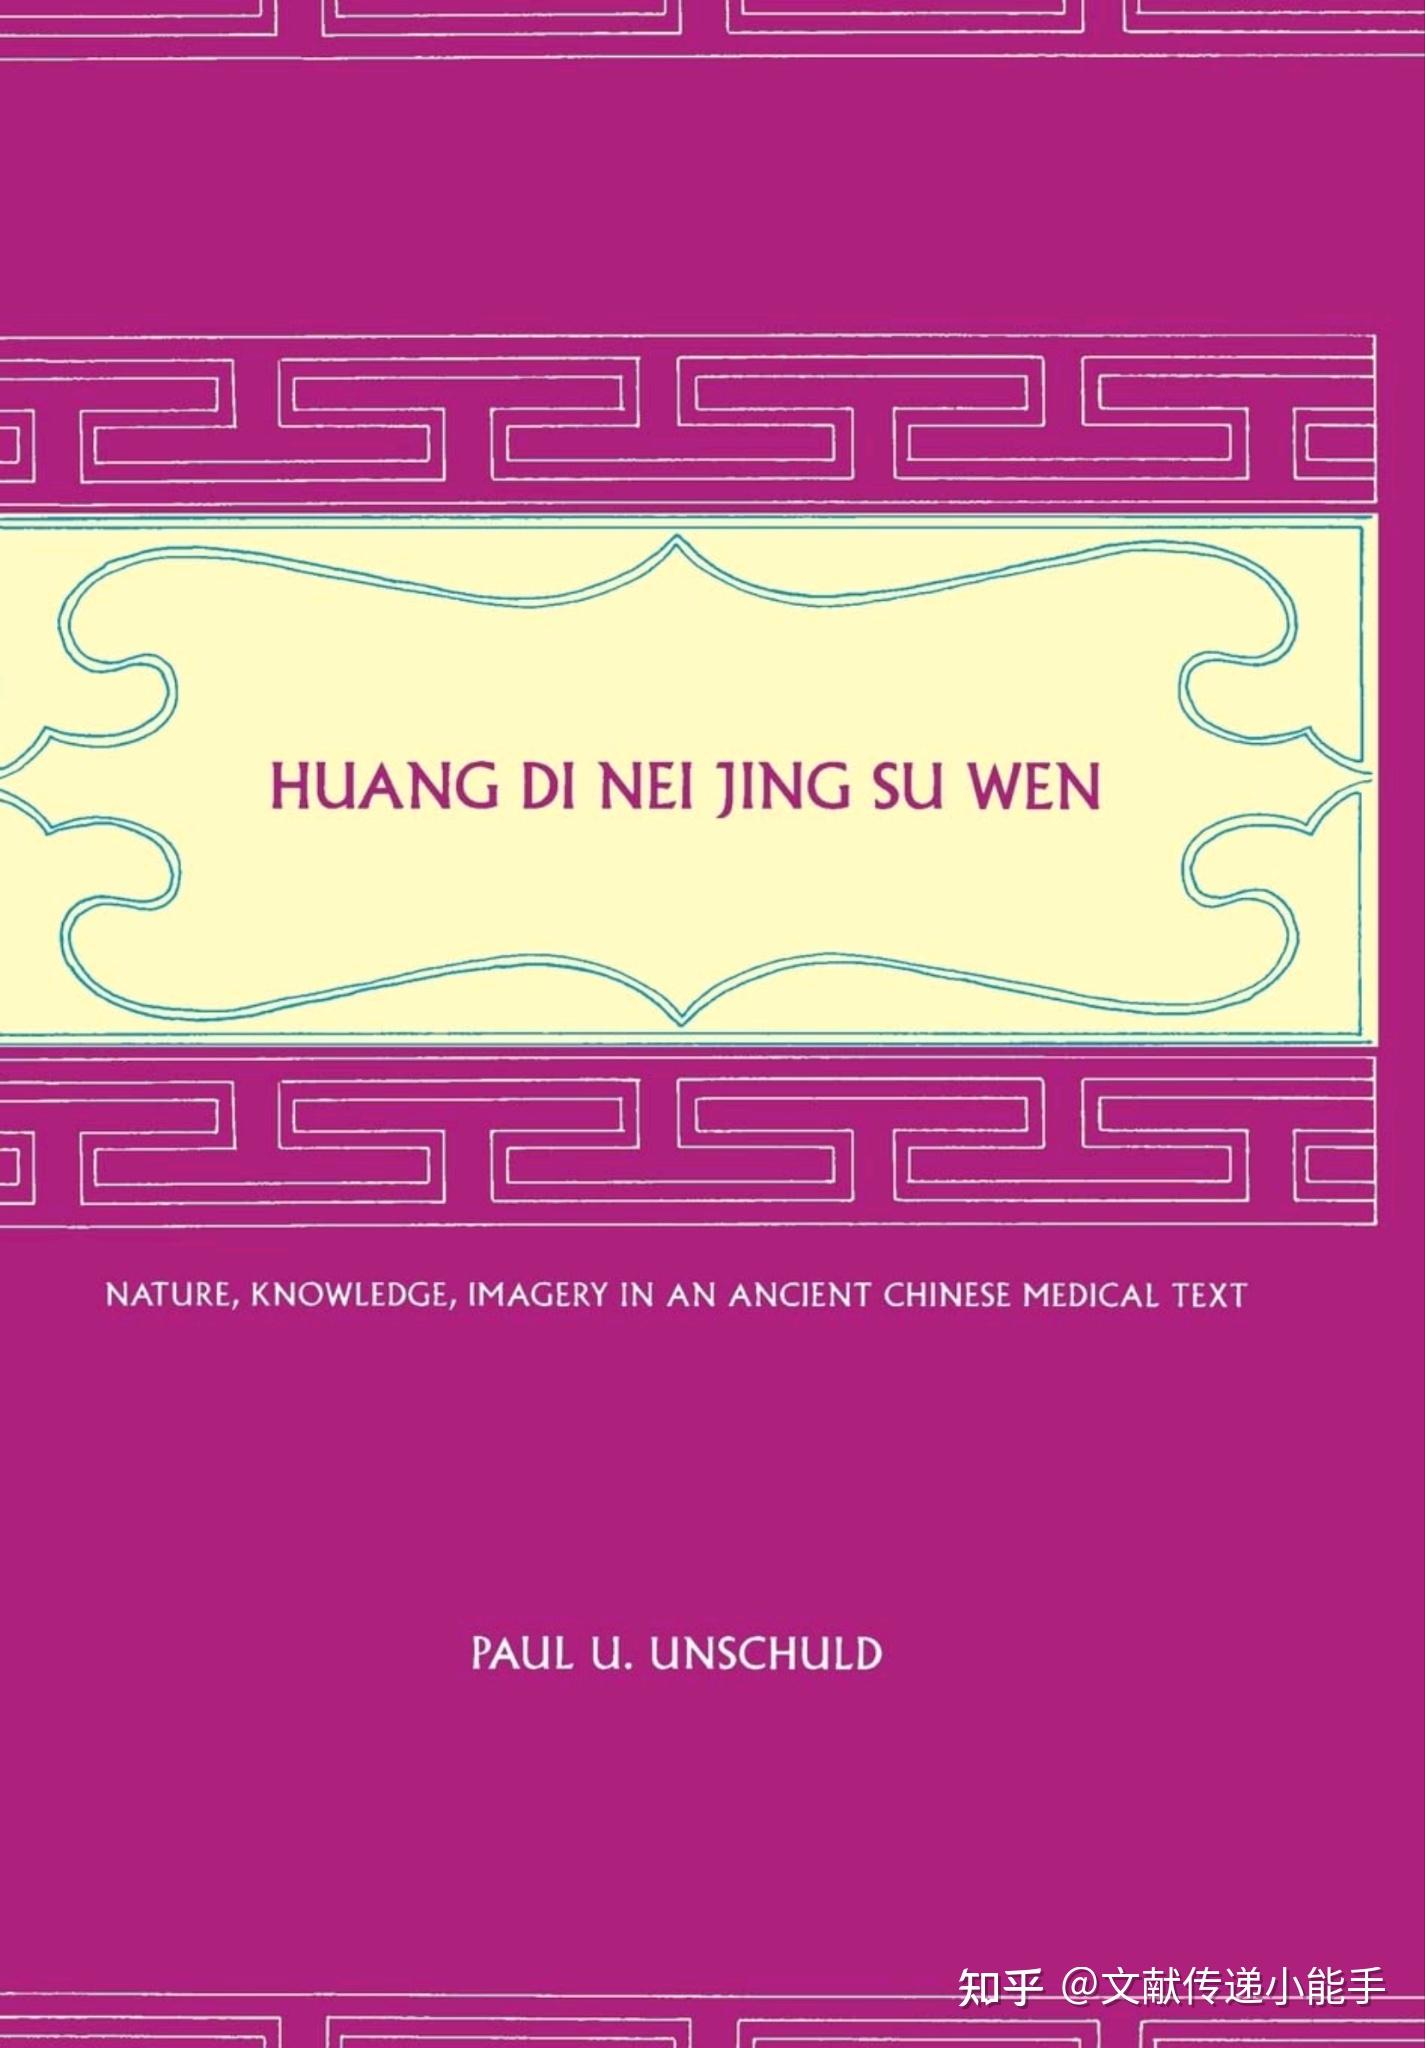 黄帝内经,素问,英译本,英文版,文树德译,Huang Di Nei Jing Su Wen trans by Paul U. Unschuld ...